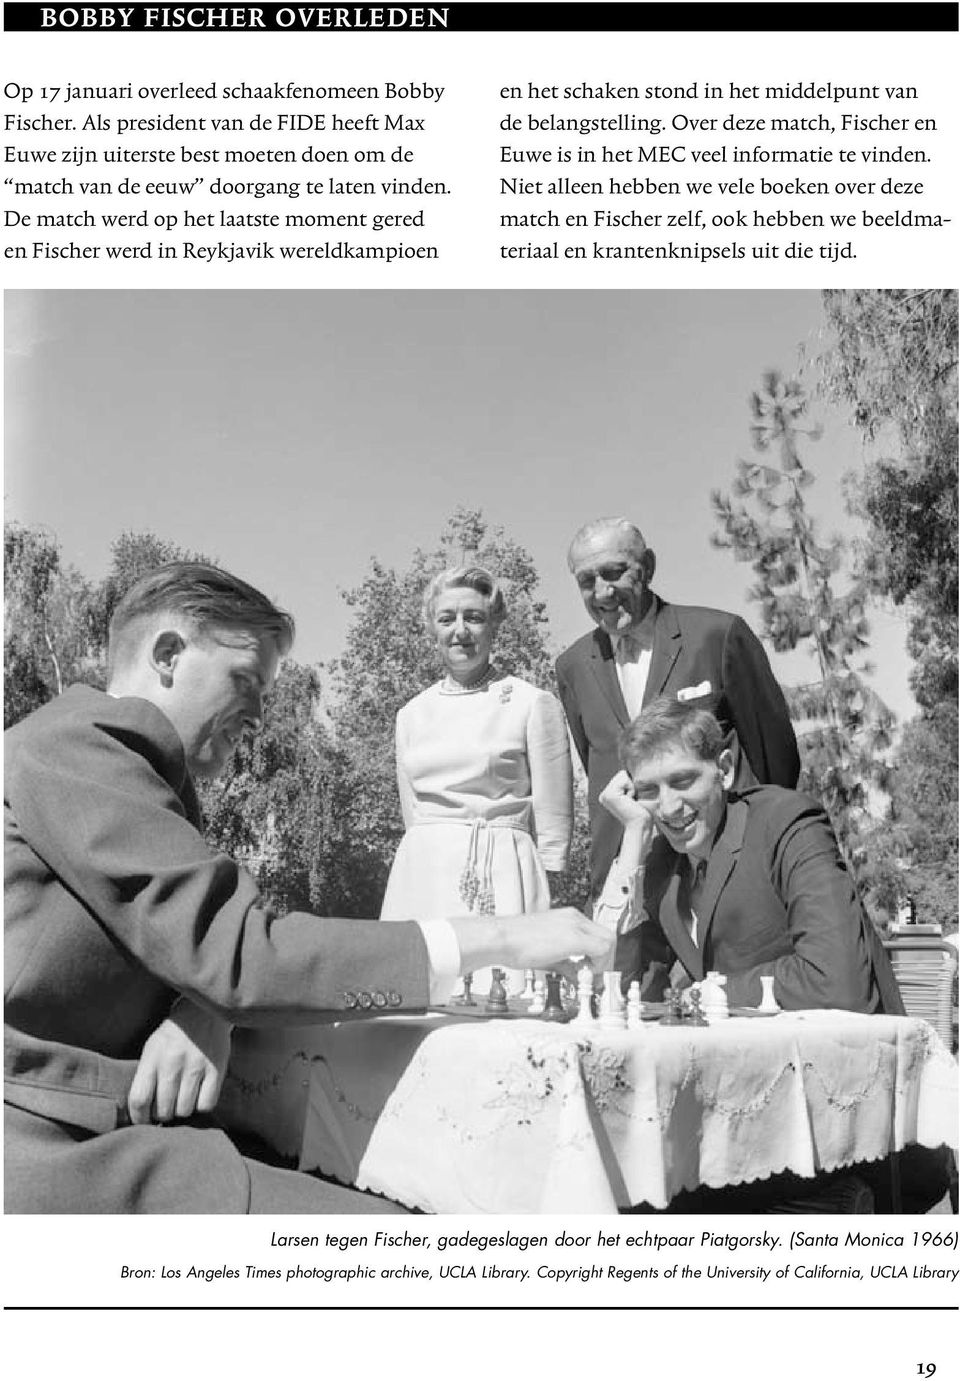 De match werd op het laatste moment gered en Fischer werd in Reykjavik wereldkampioen en het schaken stond in het middelpunt van de belangstelling.